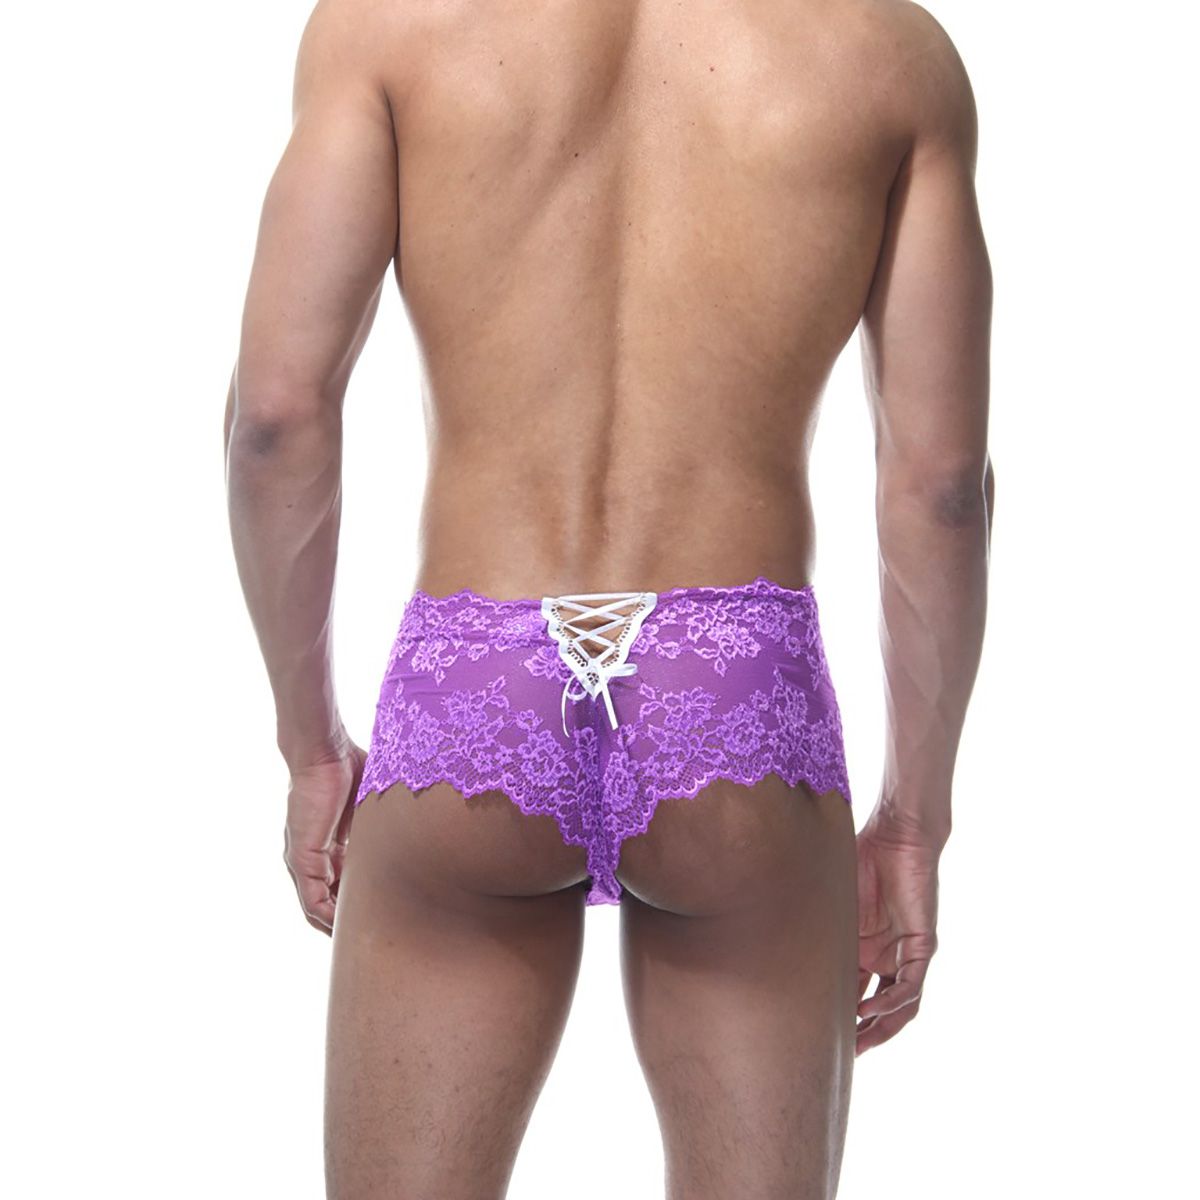 Фиолетовые мужские кружевные трусы. Сделаны из эластичной ткани, поэтому отлично подходят на любой тип фигуры. Яркая расцветка и украшение на ягодицах легко смогут украсить ваше тело.